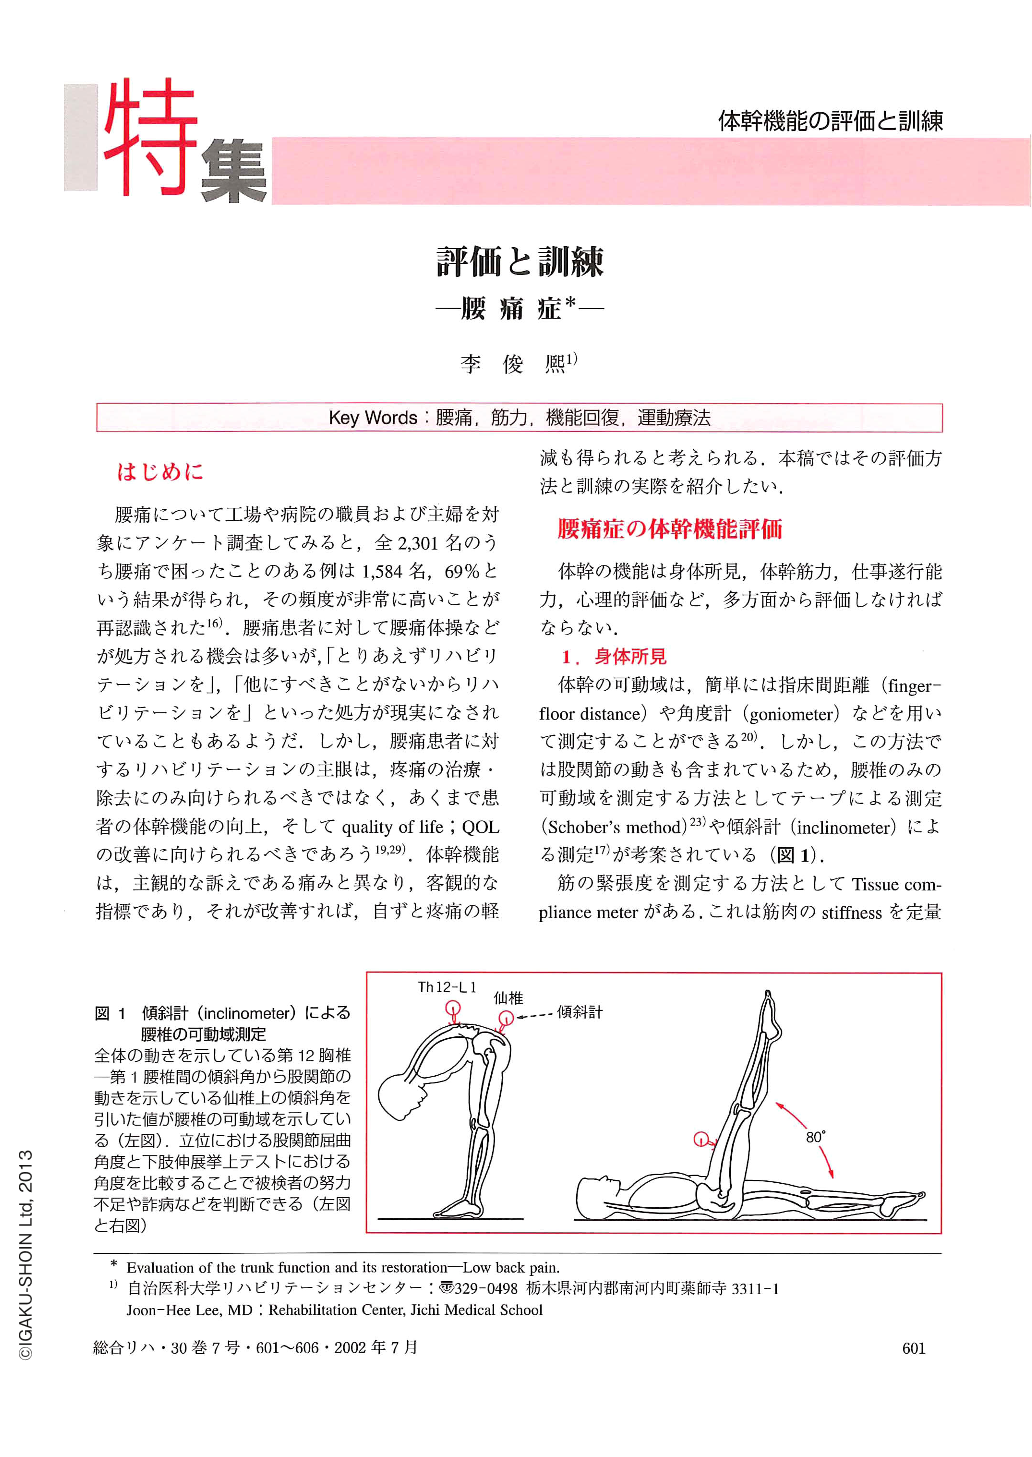 評価と訓練―腰痛症 (総合リハビリテーション 30巻7号) | 医書.jp